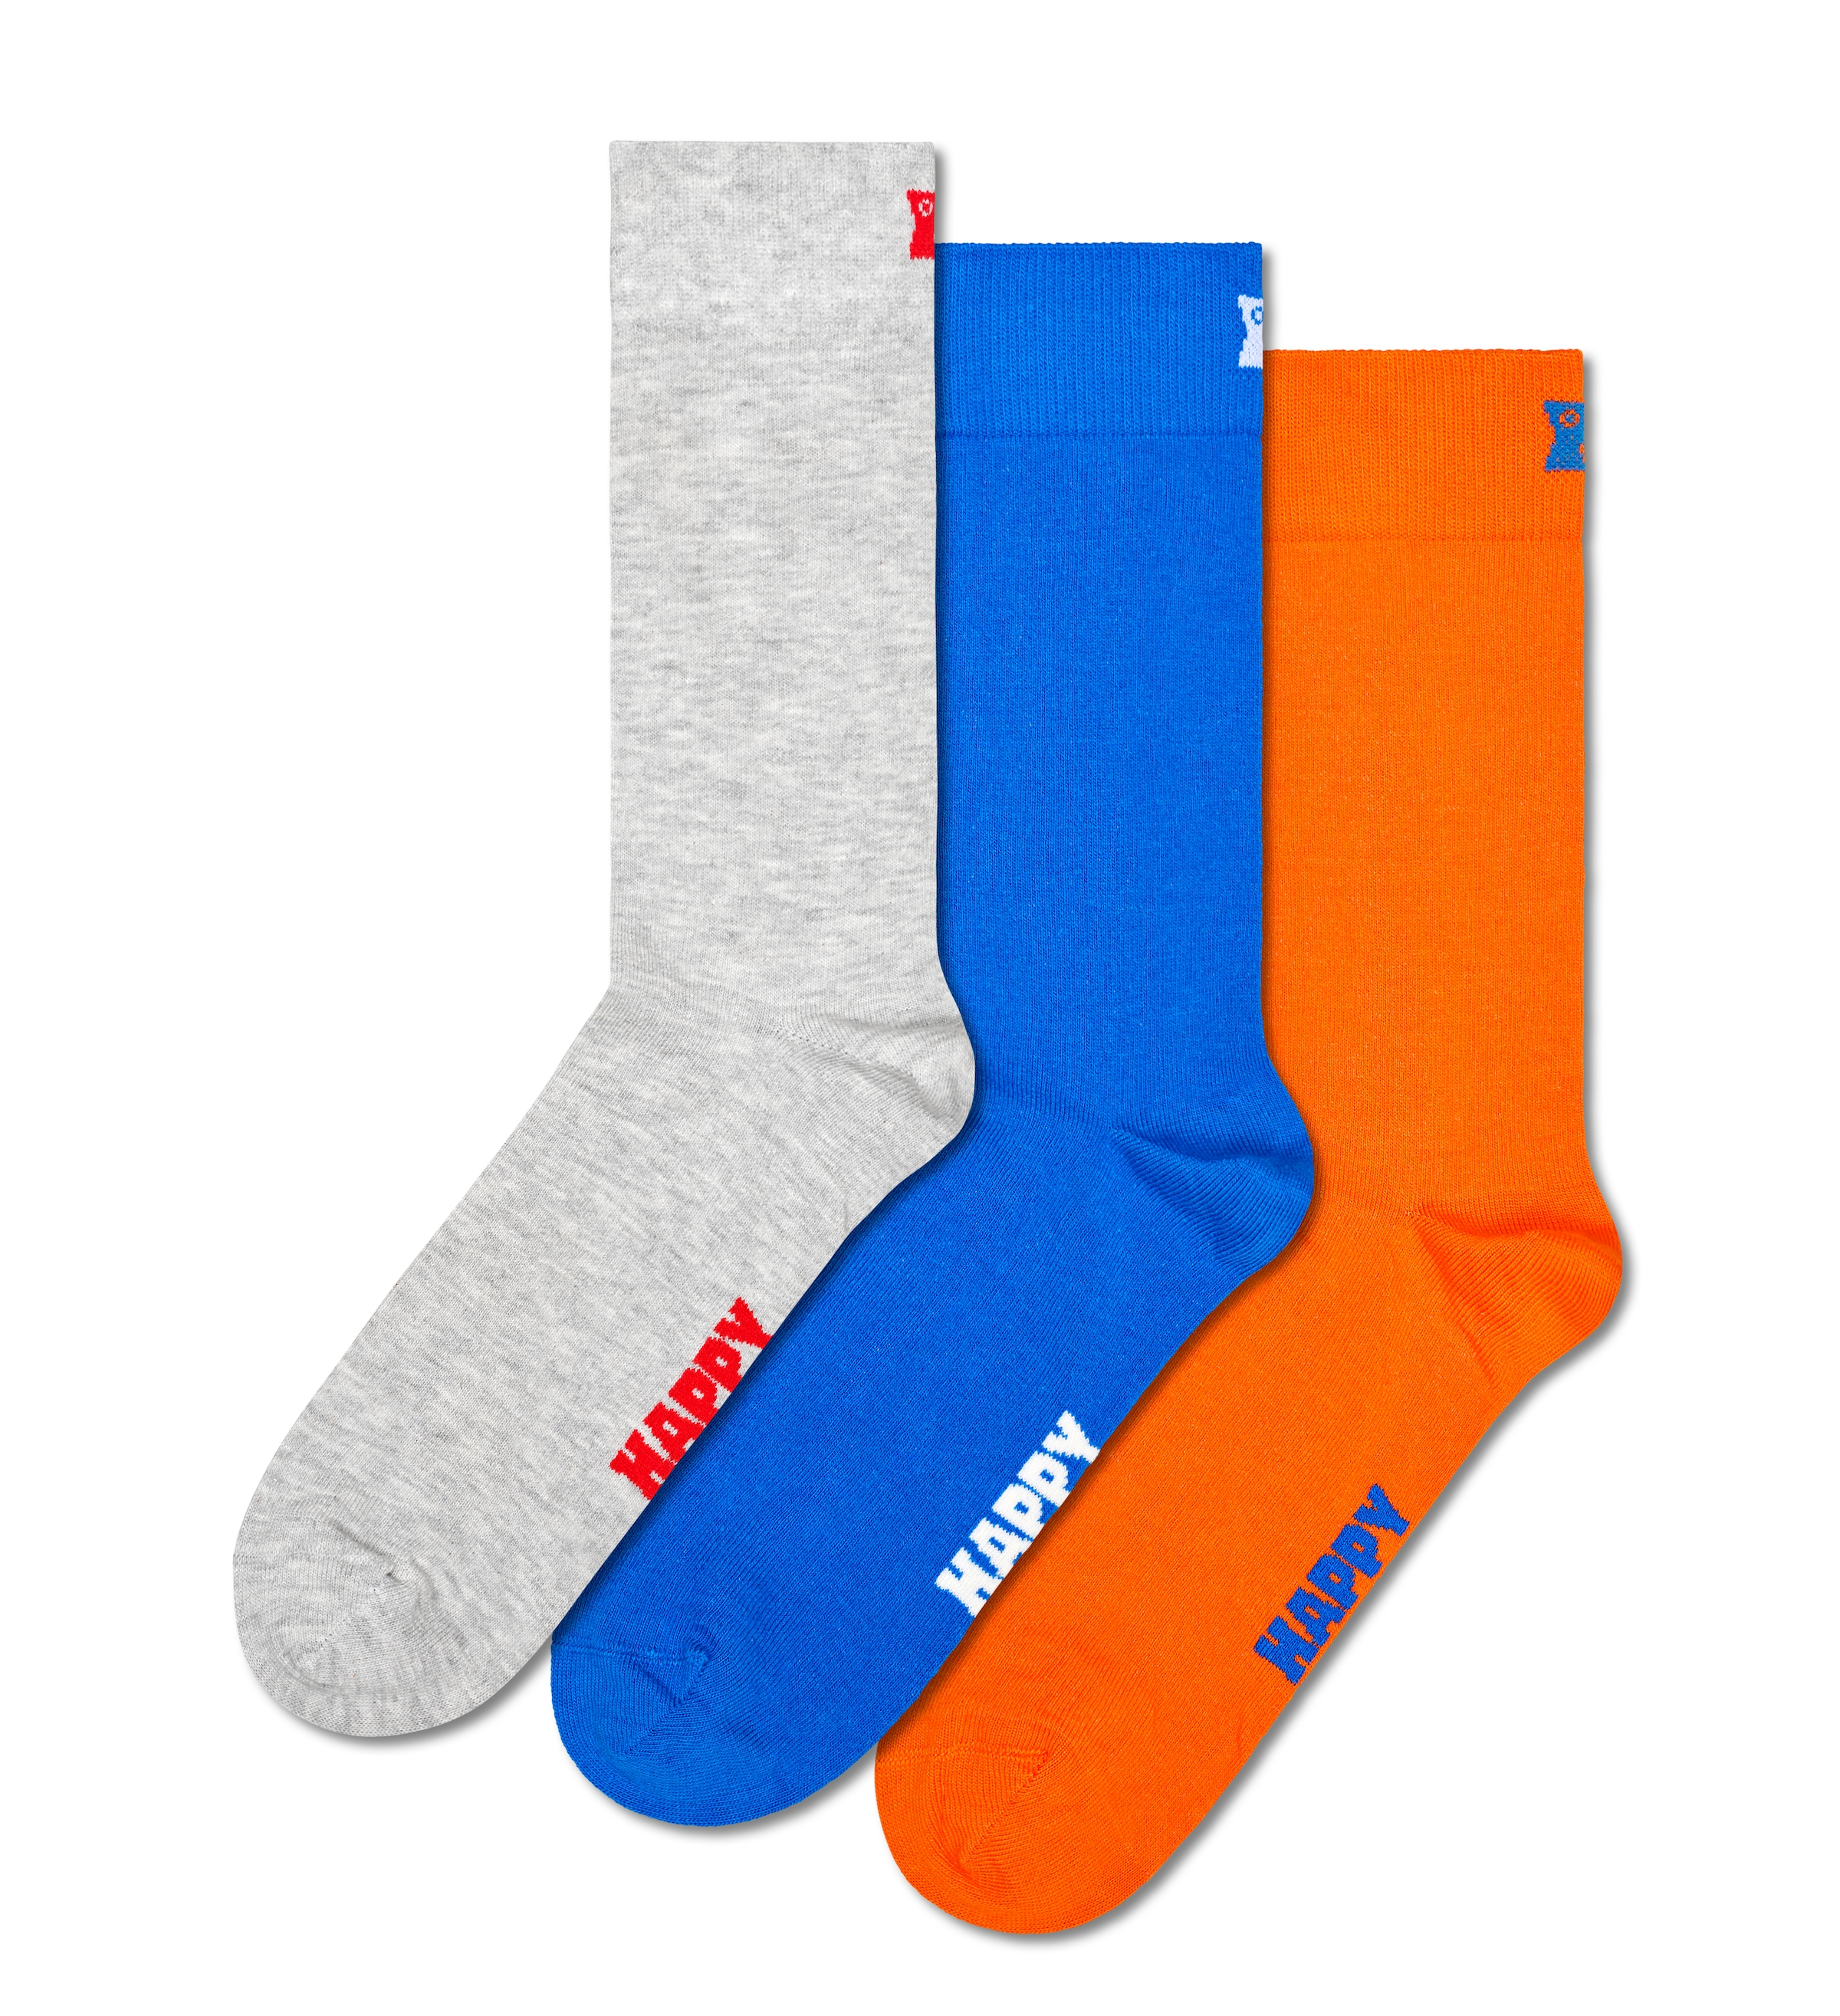 Happy Socks  Socken (Set 3 poros) su schlichtem Loo...